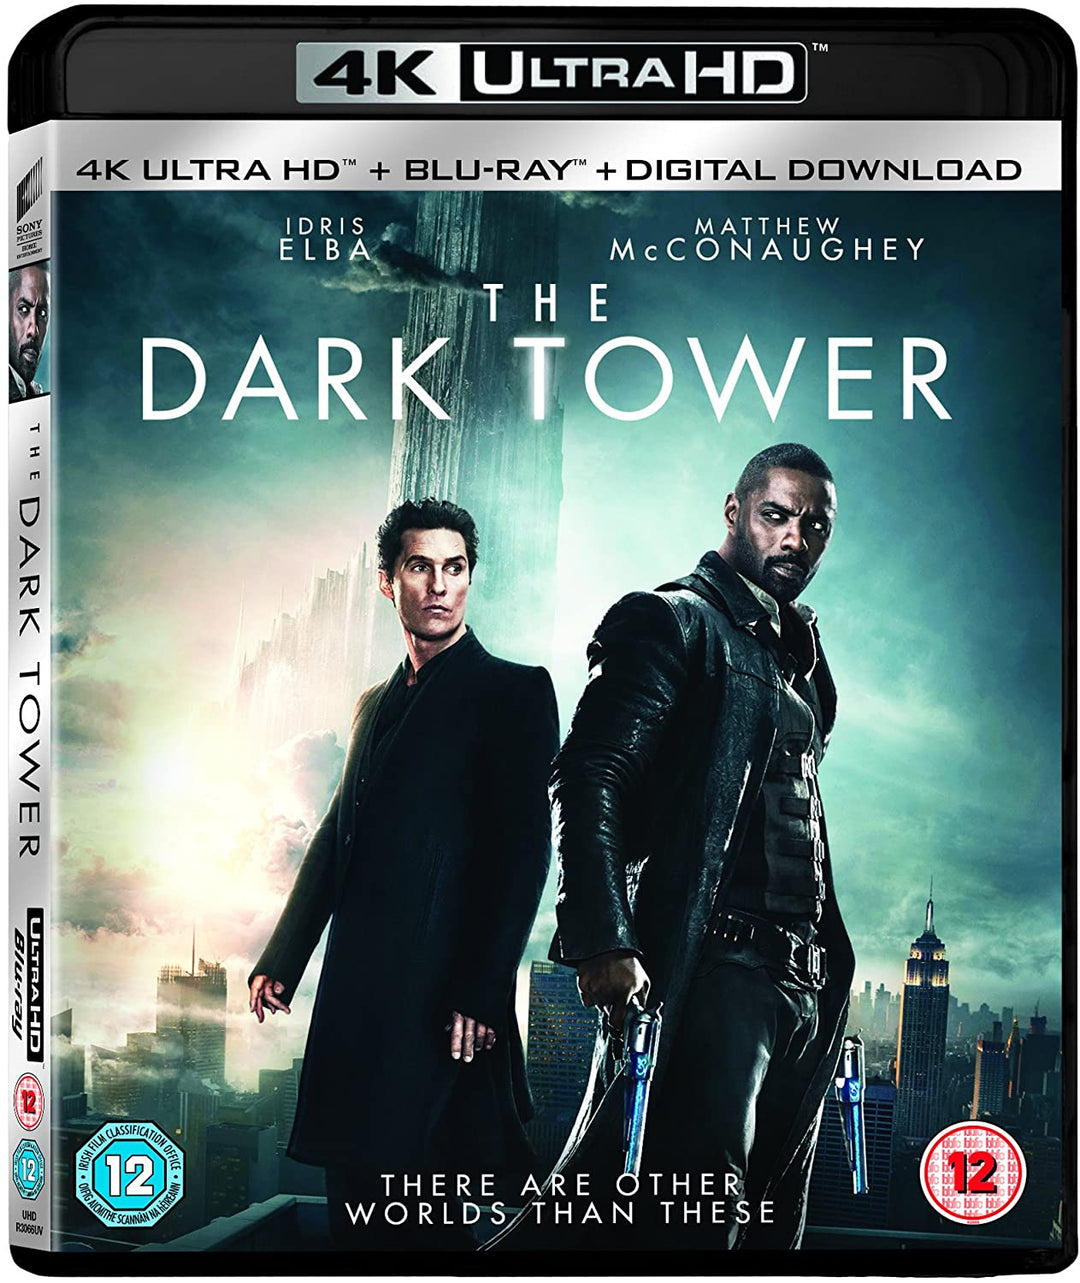 La tour sombre (4K Ultra HD + Blu-ray) [2017] [Région gratuite]